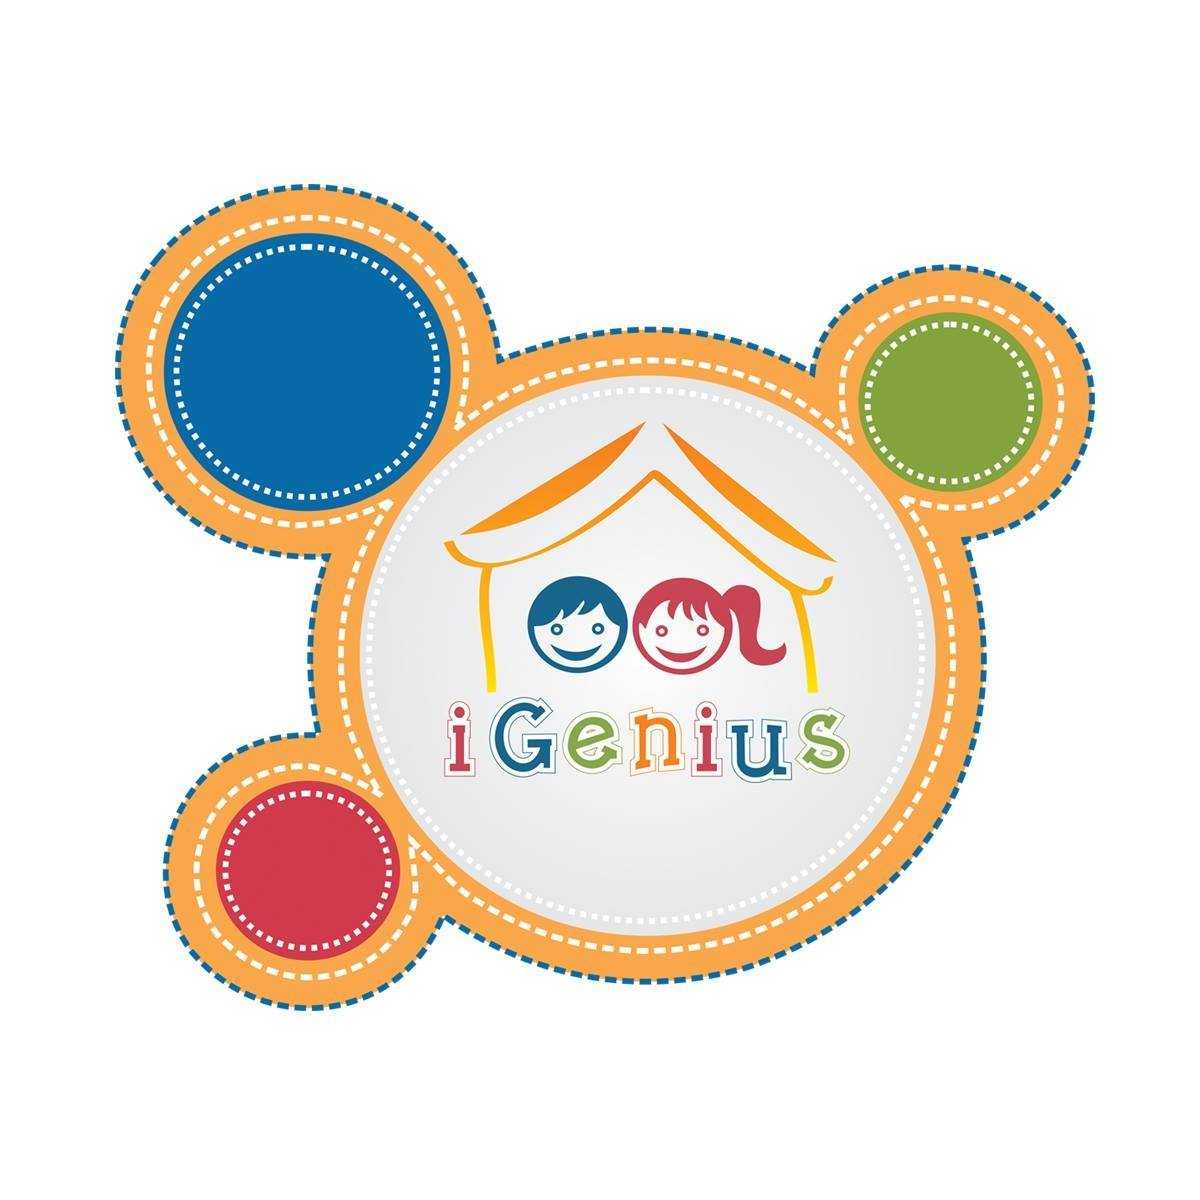 IGenius academy school & preschool